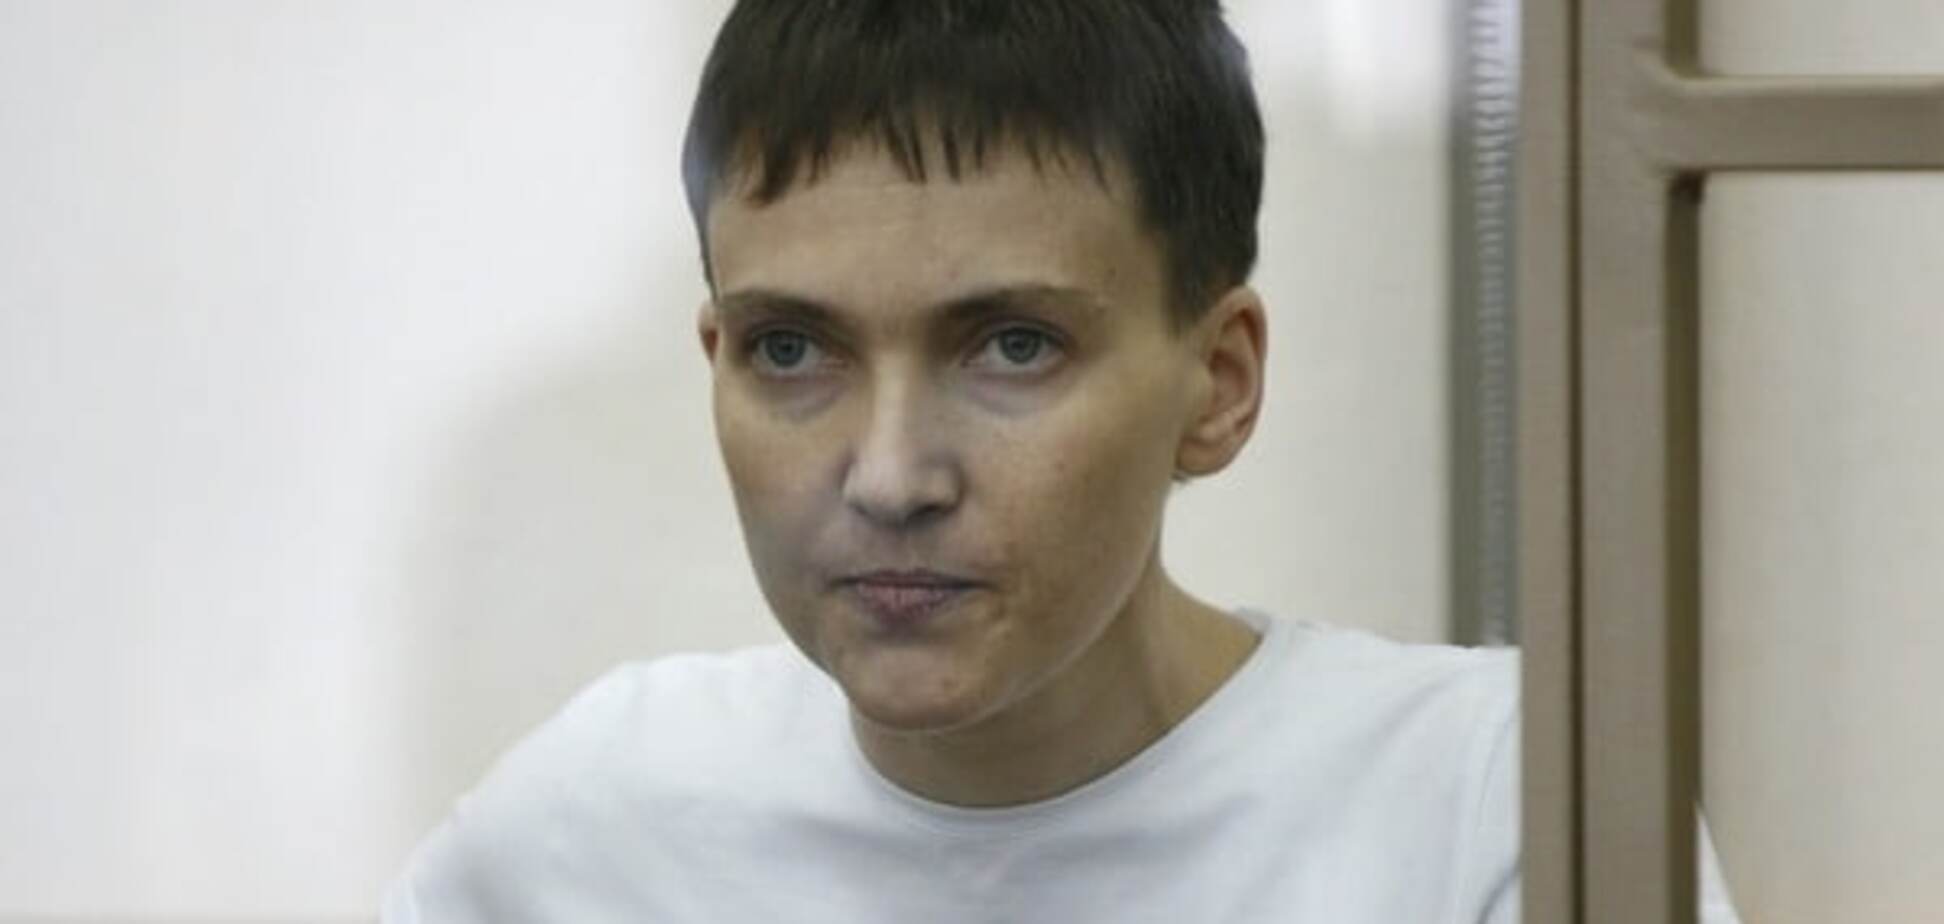 Савченко в суде